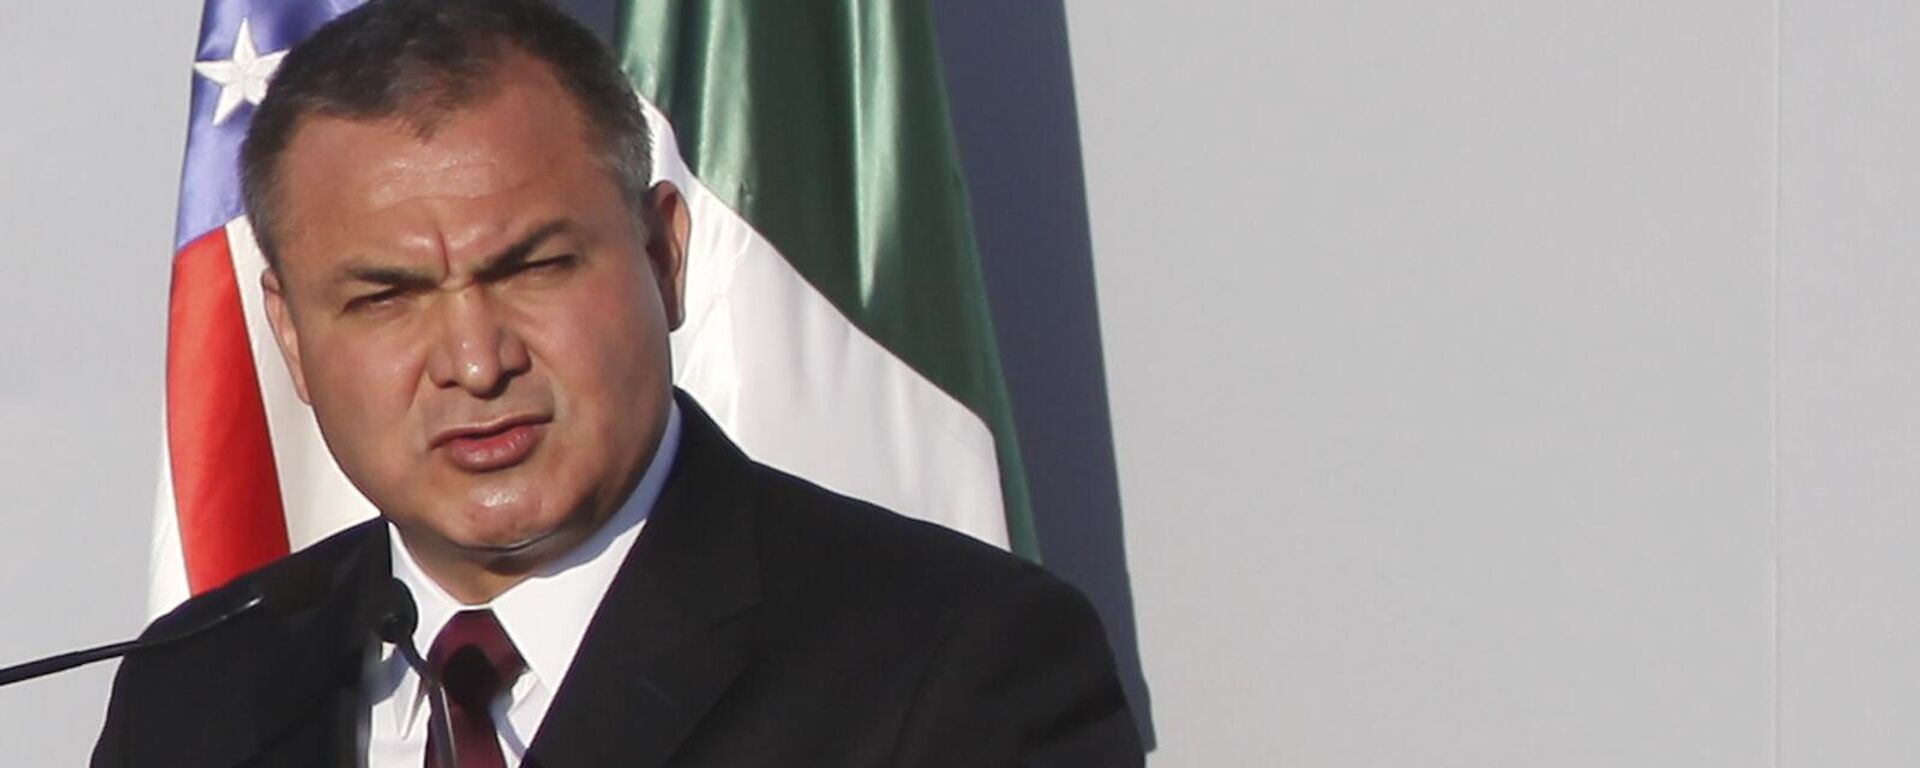 Genaro García Luna, exsecretario de Seguridad Pública de México, durante el Gobierno de Felipe Calderón (2006-2012) - Sputnik Mundo, 1920, 09.03.2023